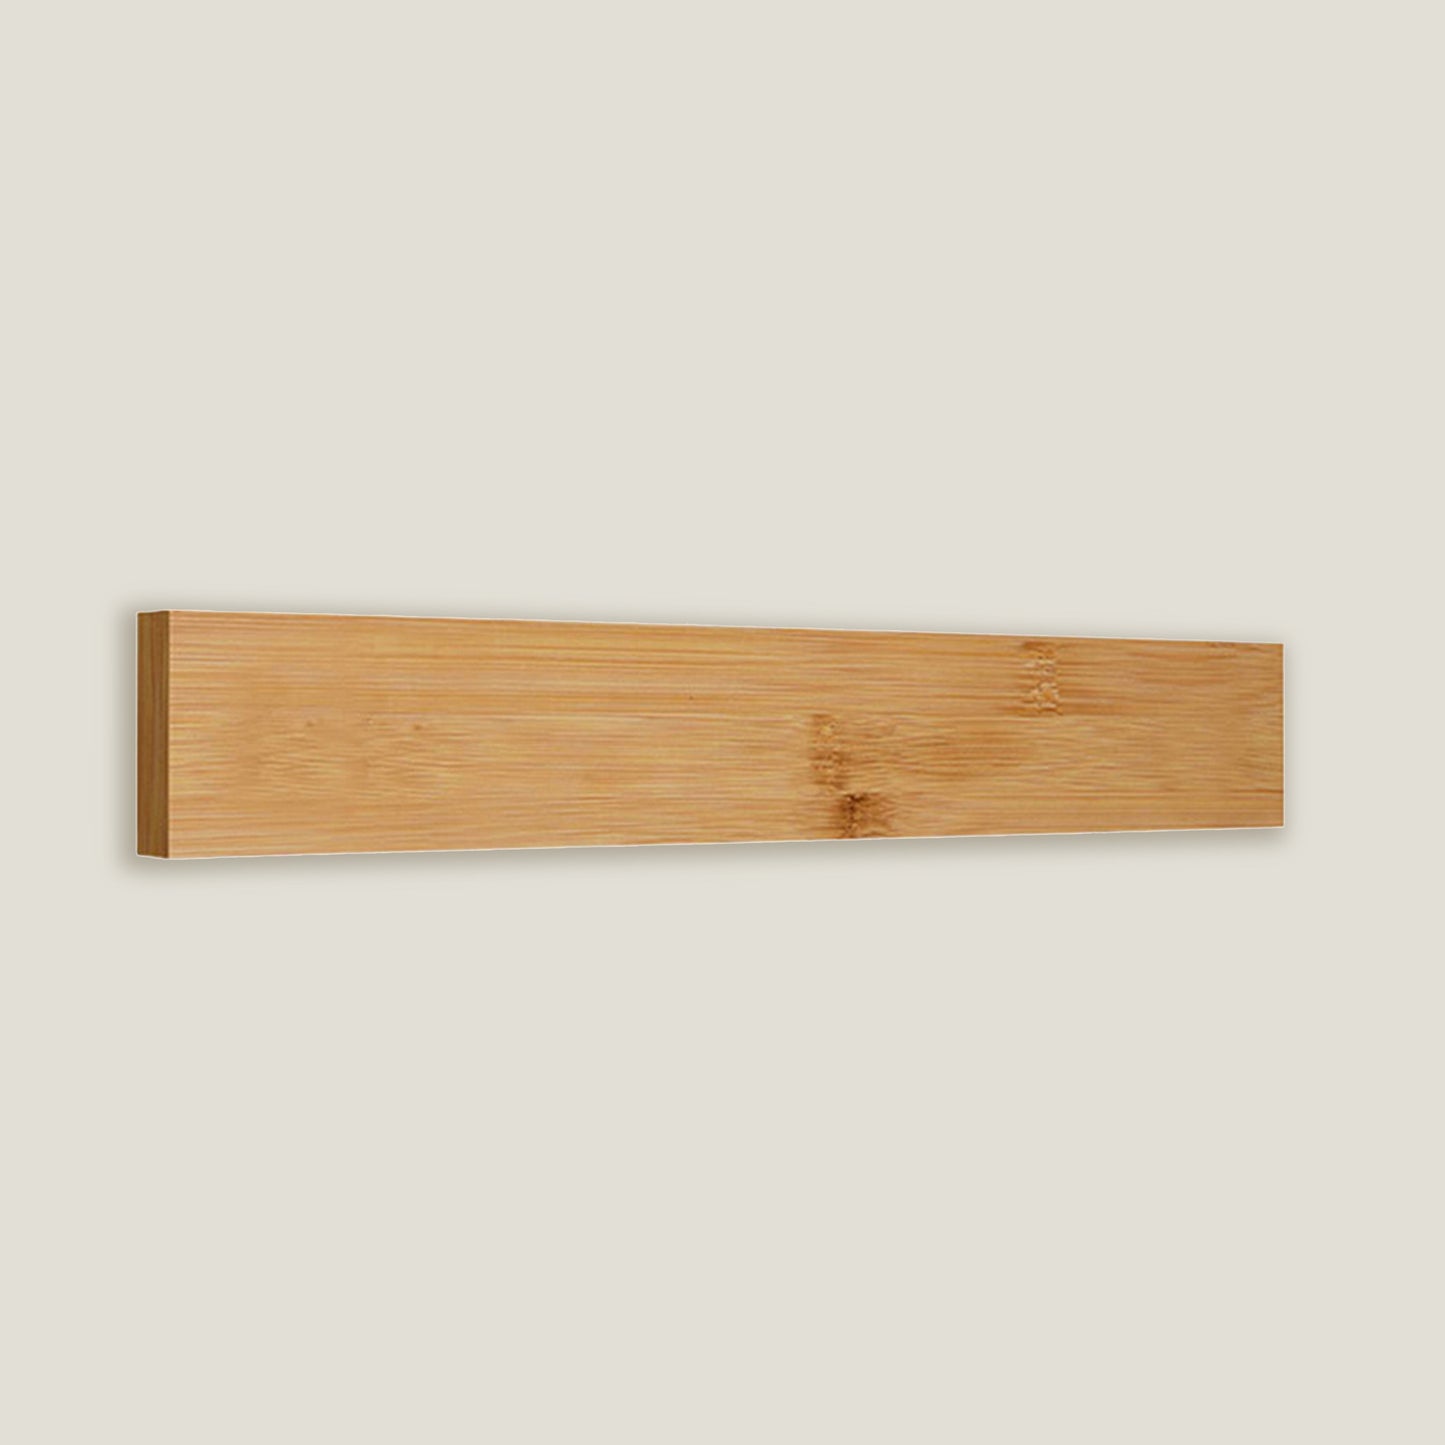 Wood Kitchen Knife Holder